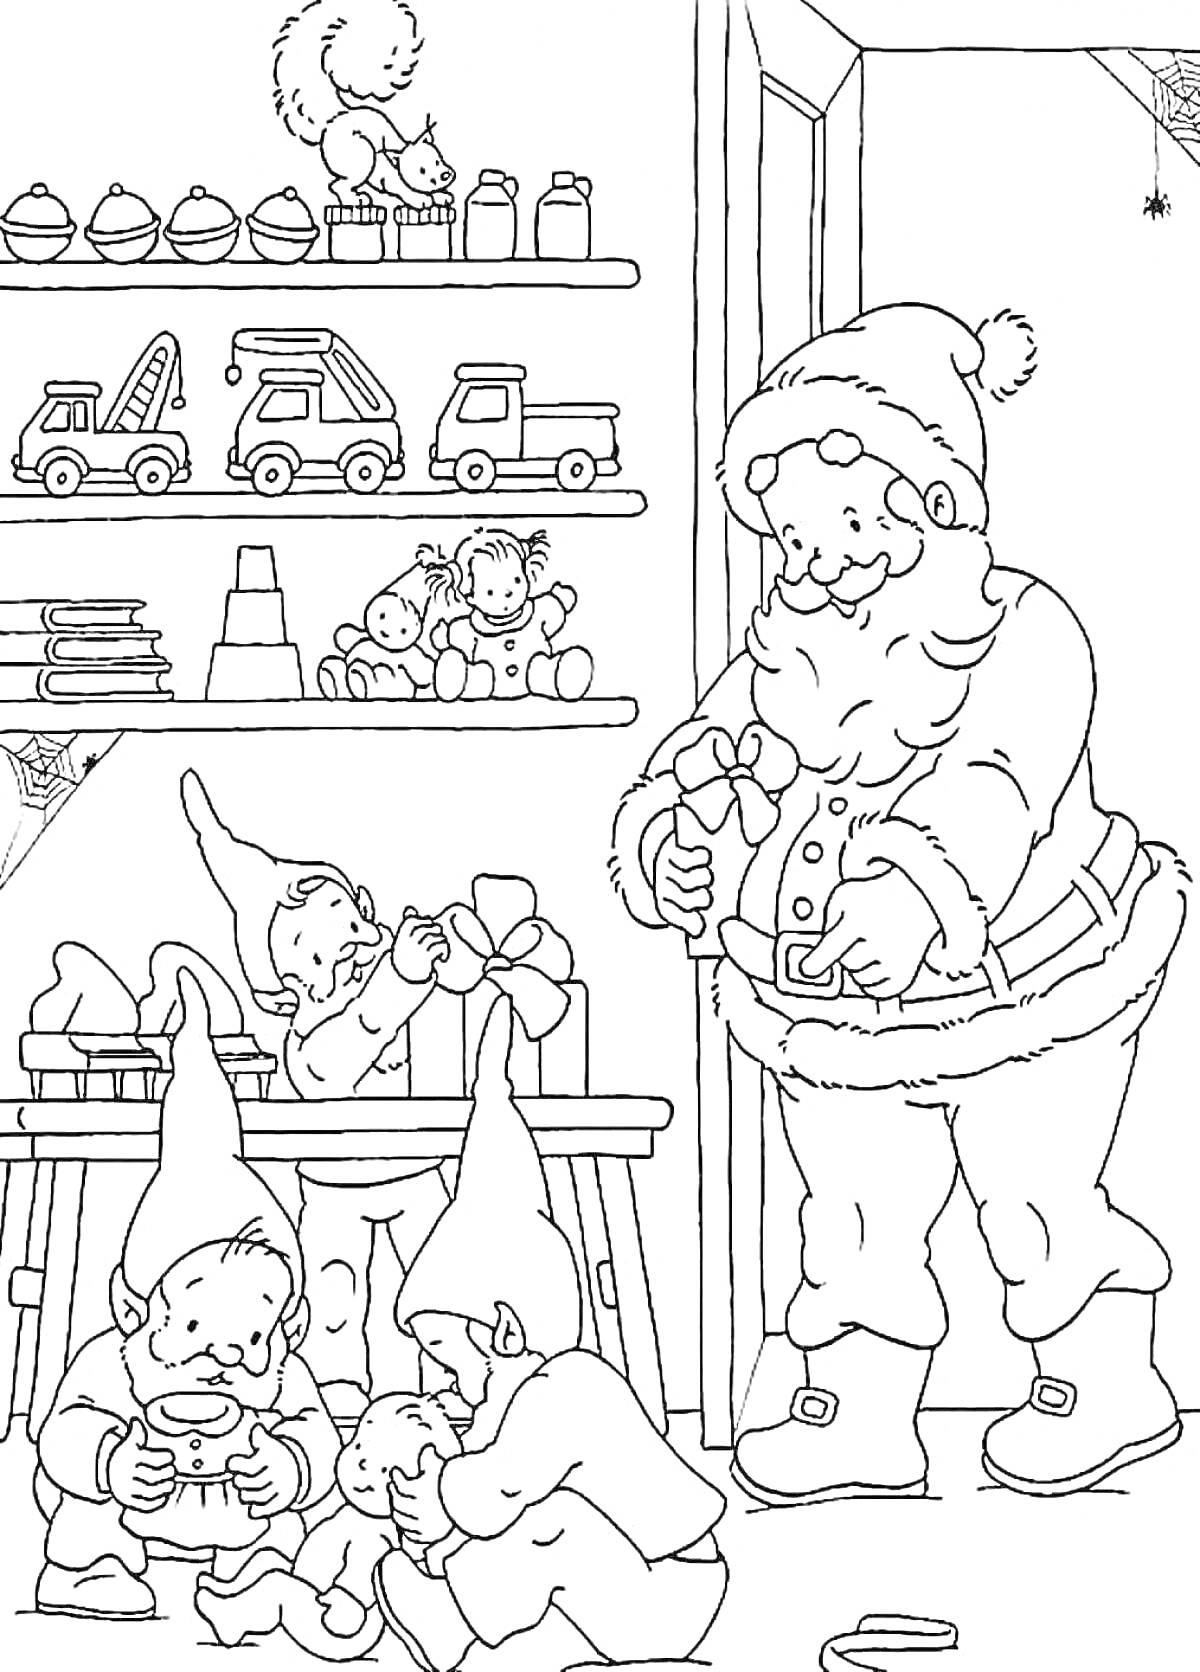 Раскраска Санта-Клаус и эльфы на фабрике игрушек с полками игрушек, подарками, белкой и паутиной